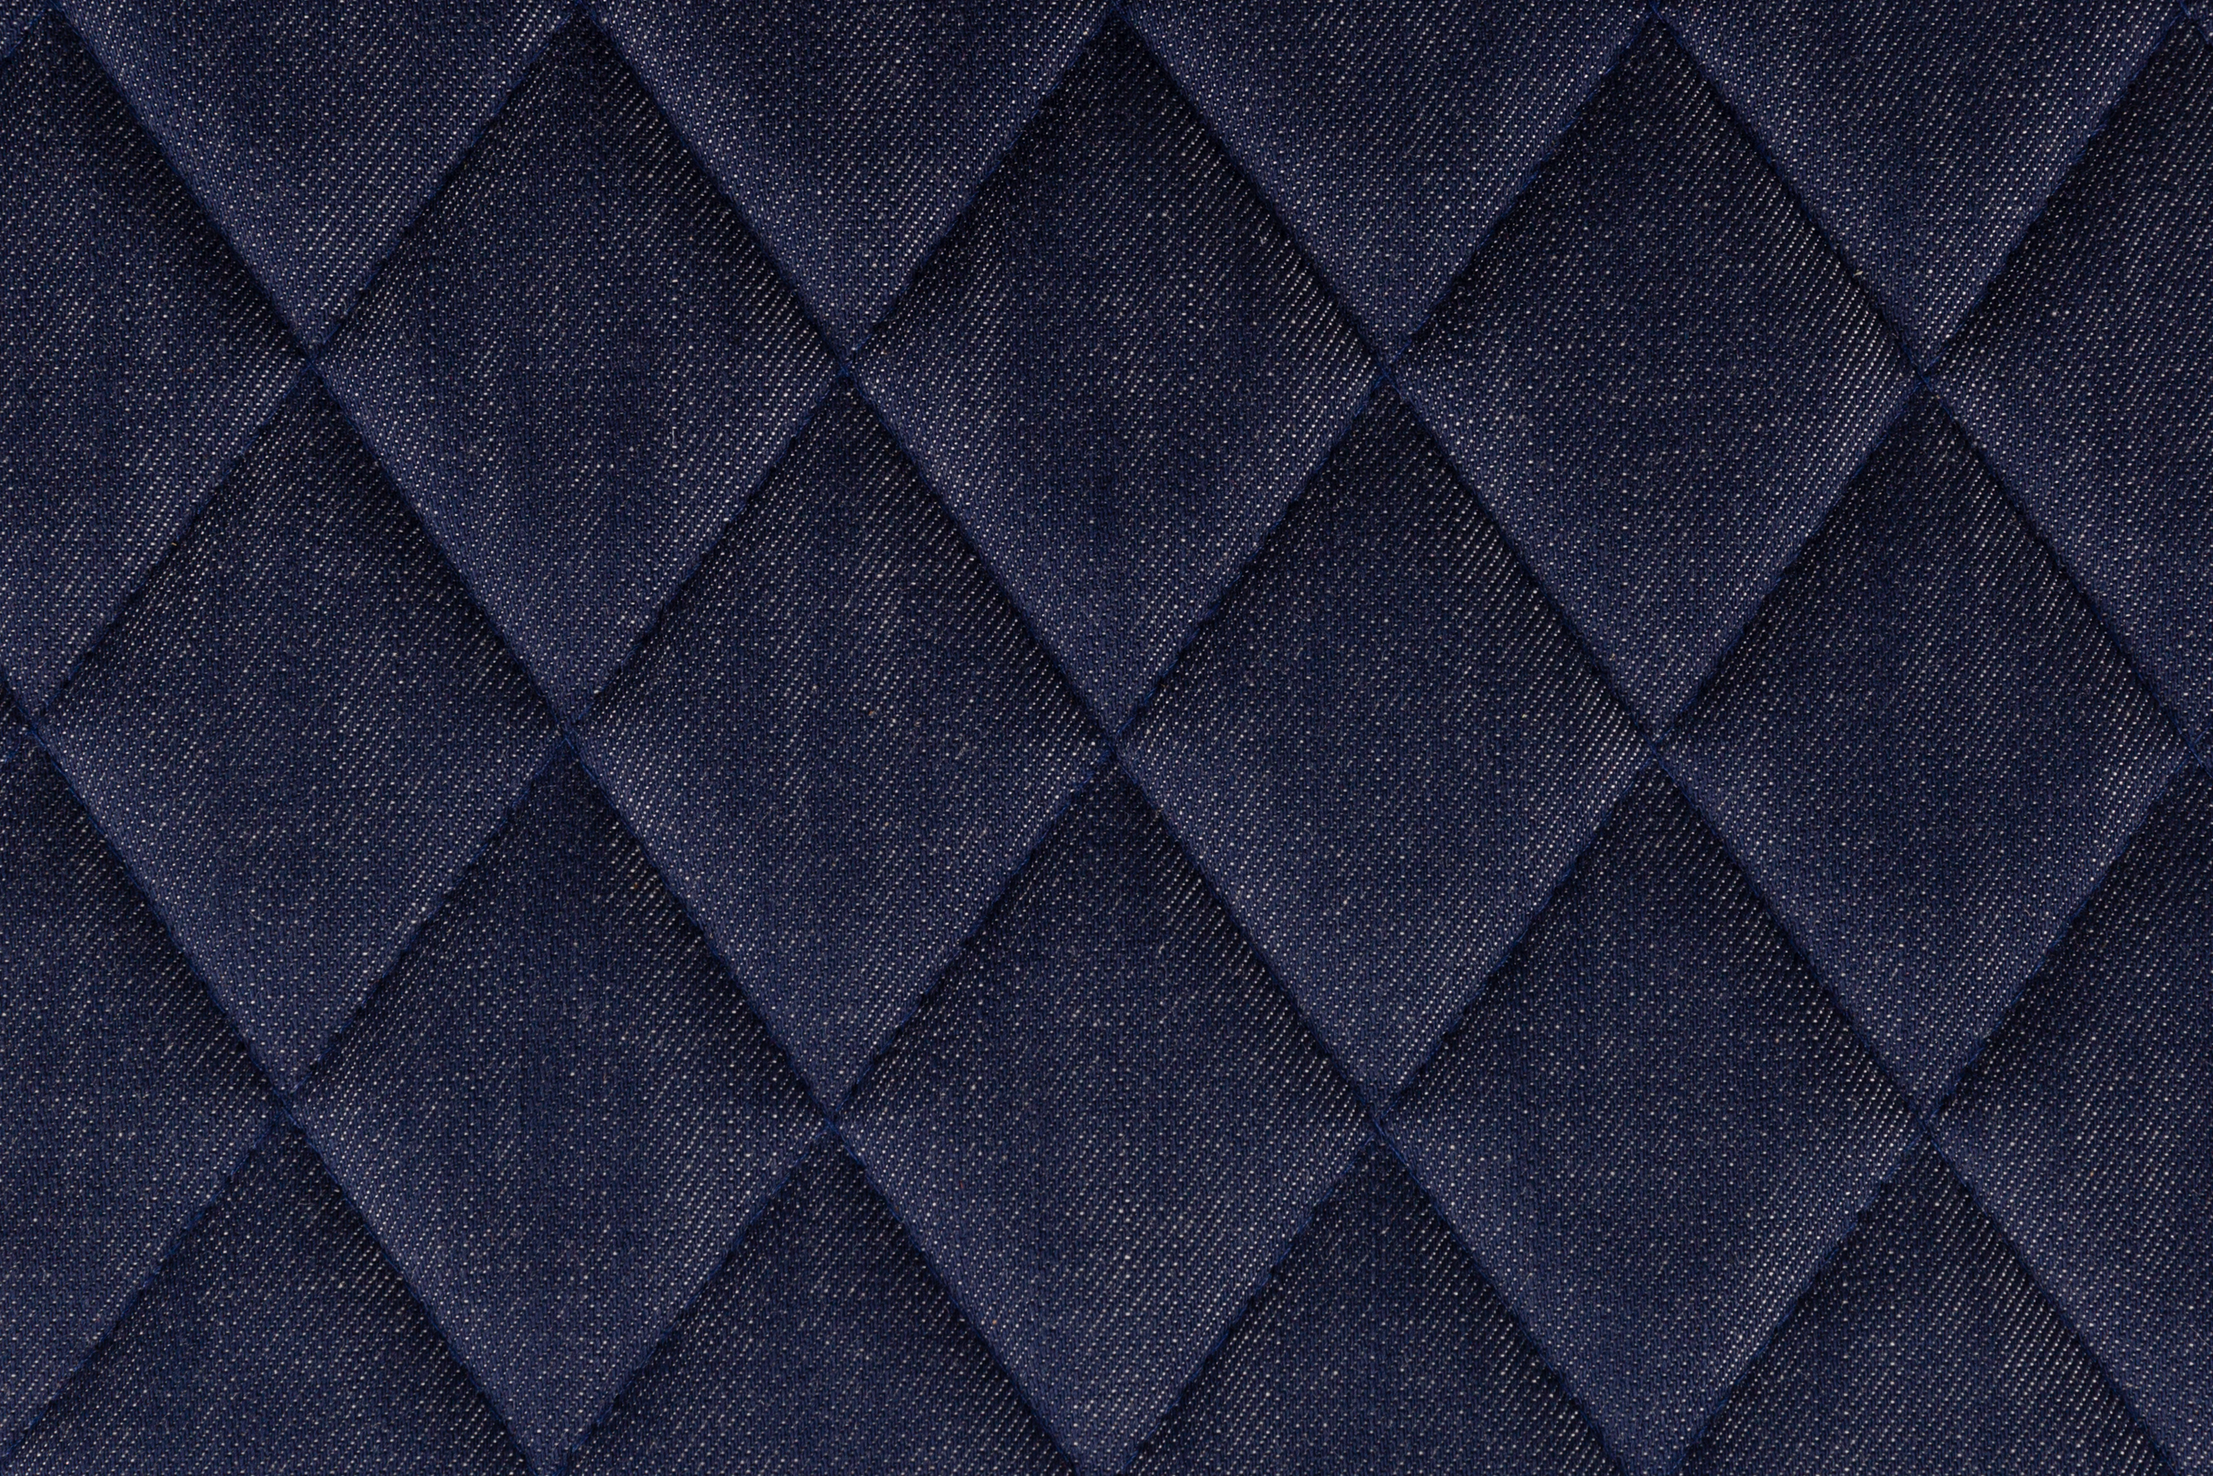 Fabric sample Denim Indigo blue